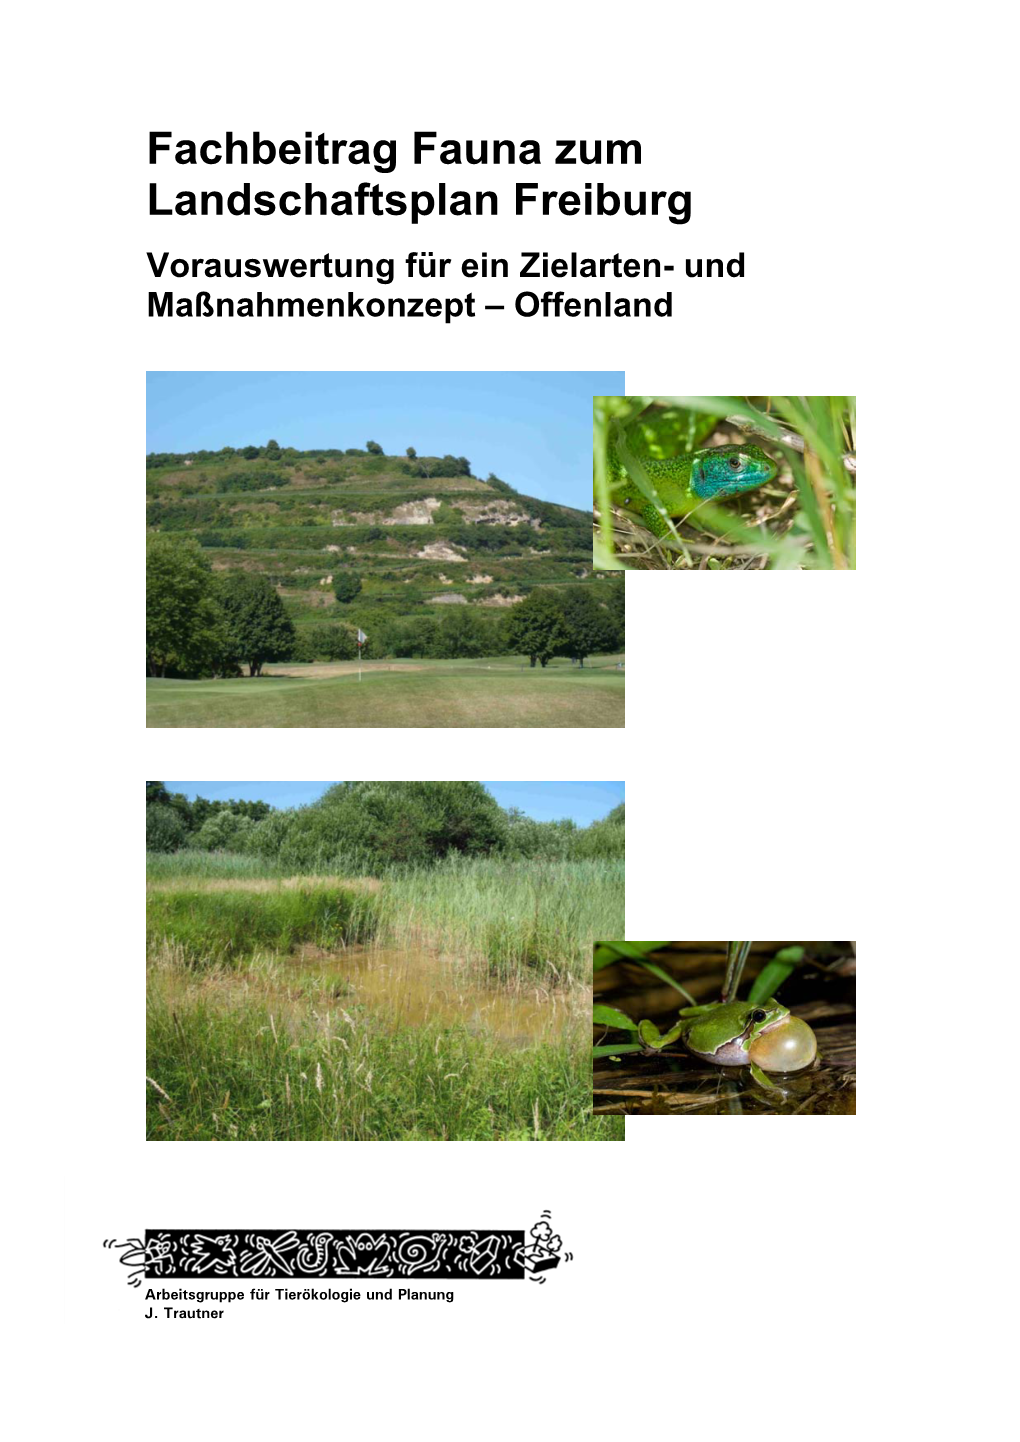 Fachbeitrag Fauna Zum Landschaftsplan Freiburg Vorauswertung Für Ein Zielarten- Und Maßnahmenkonzept – Offenland